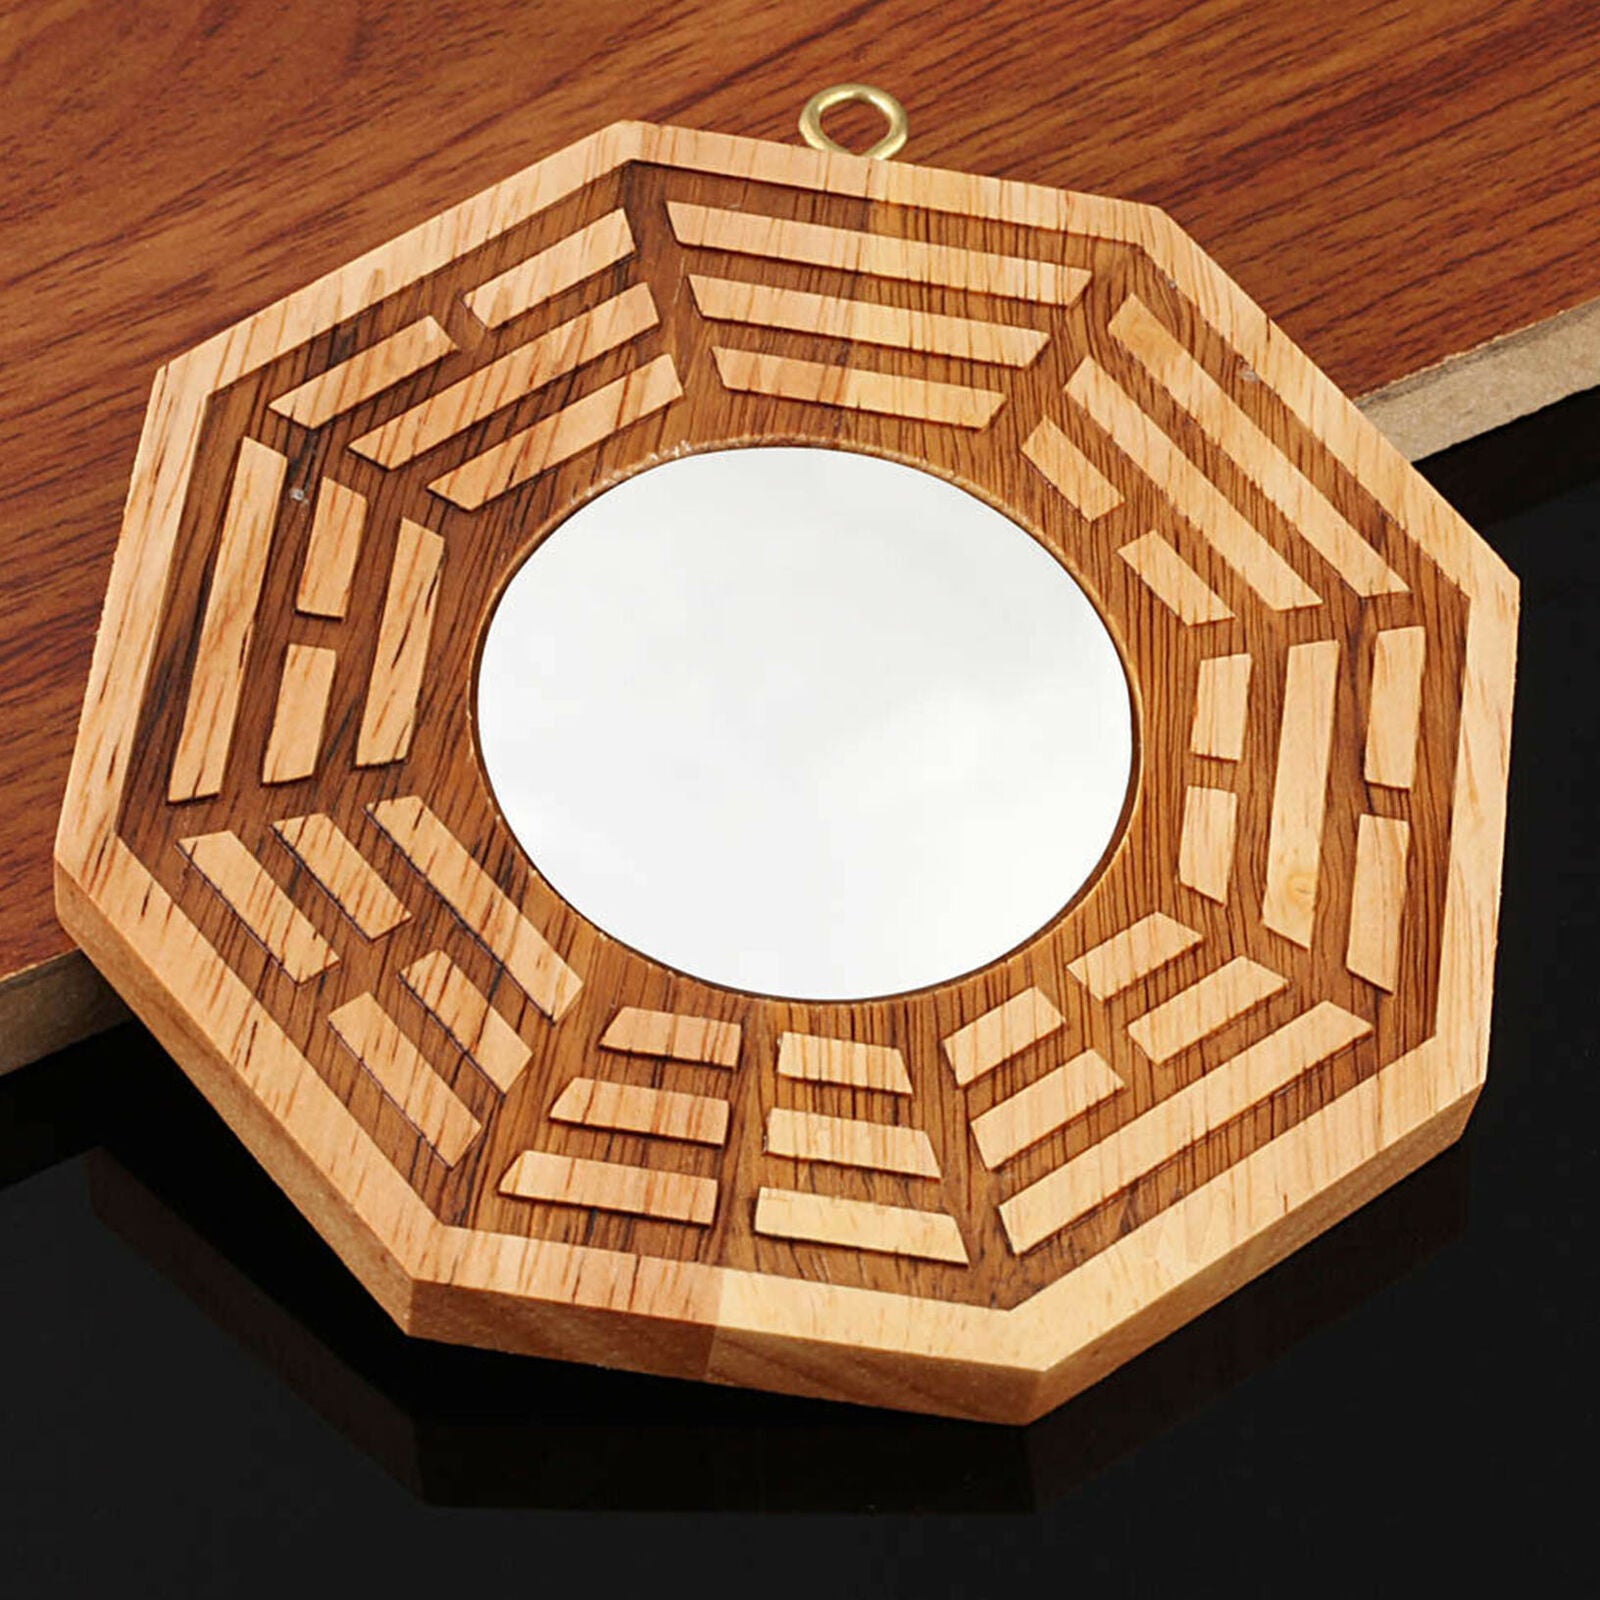 4" Peach Wood Feng Shui Bagua Pakua Mirror Convex Fortune Tai Chi Yin Yang